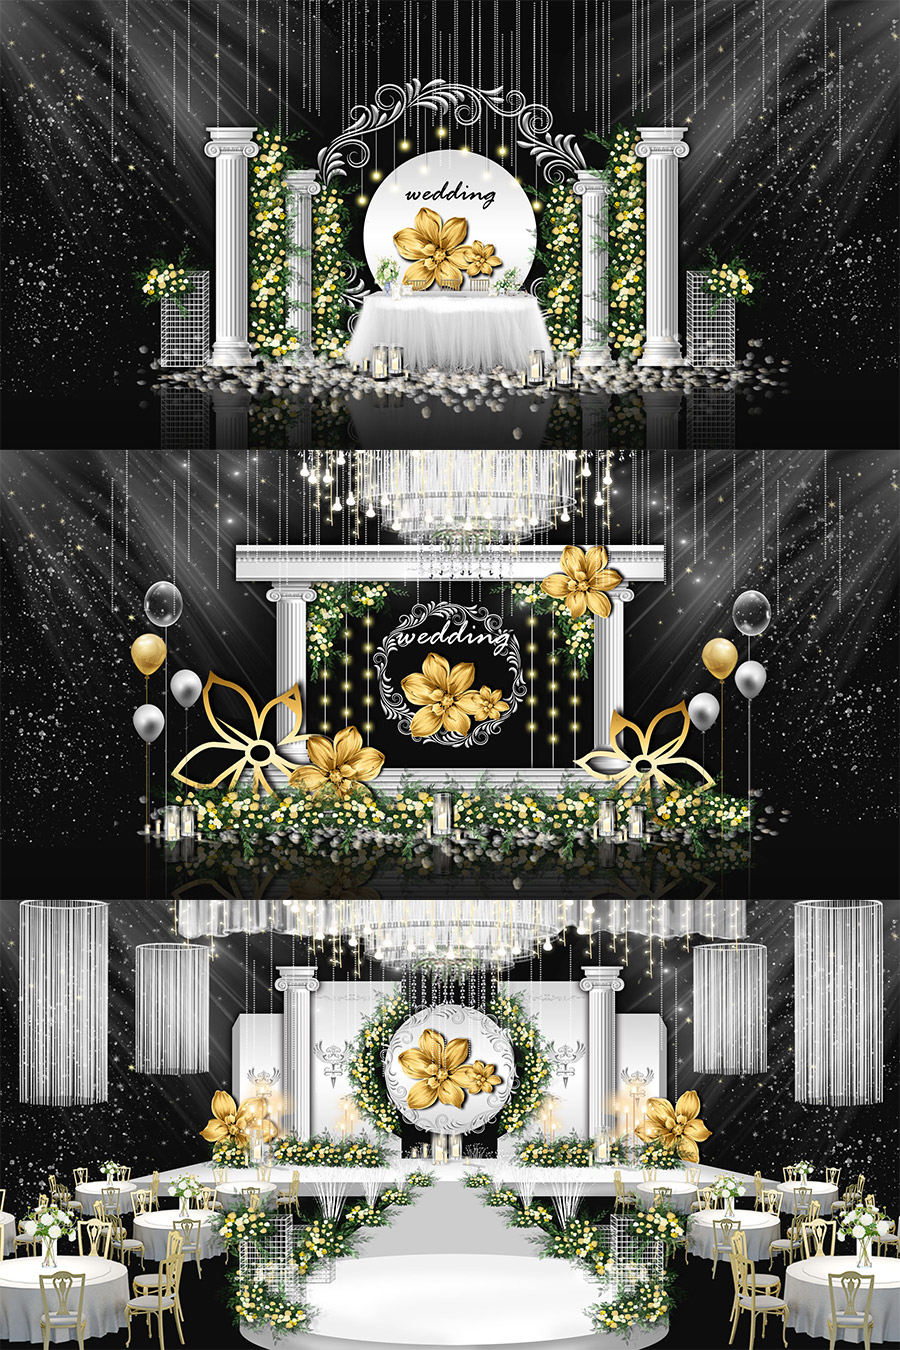 白色浪漫欧式婚礼舞台签到迎宾区效果图psd模板设计素材